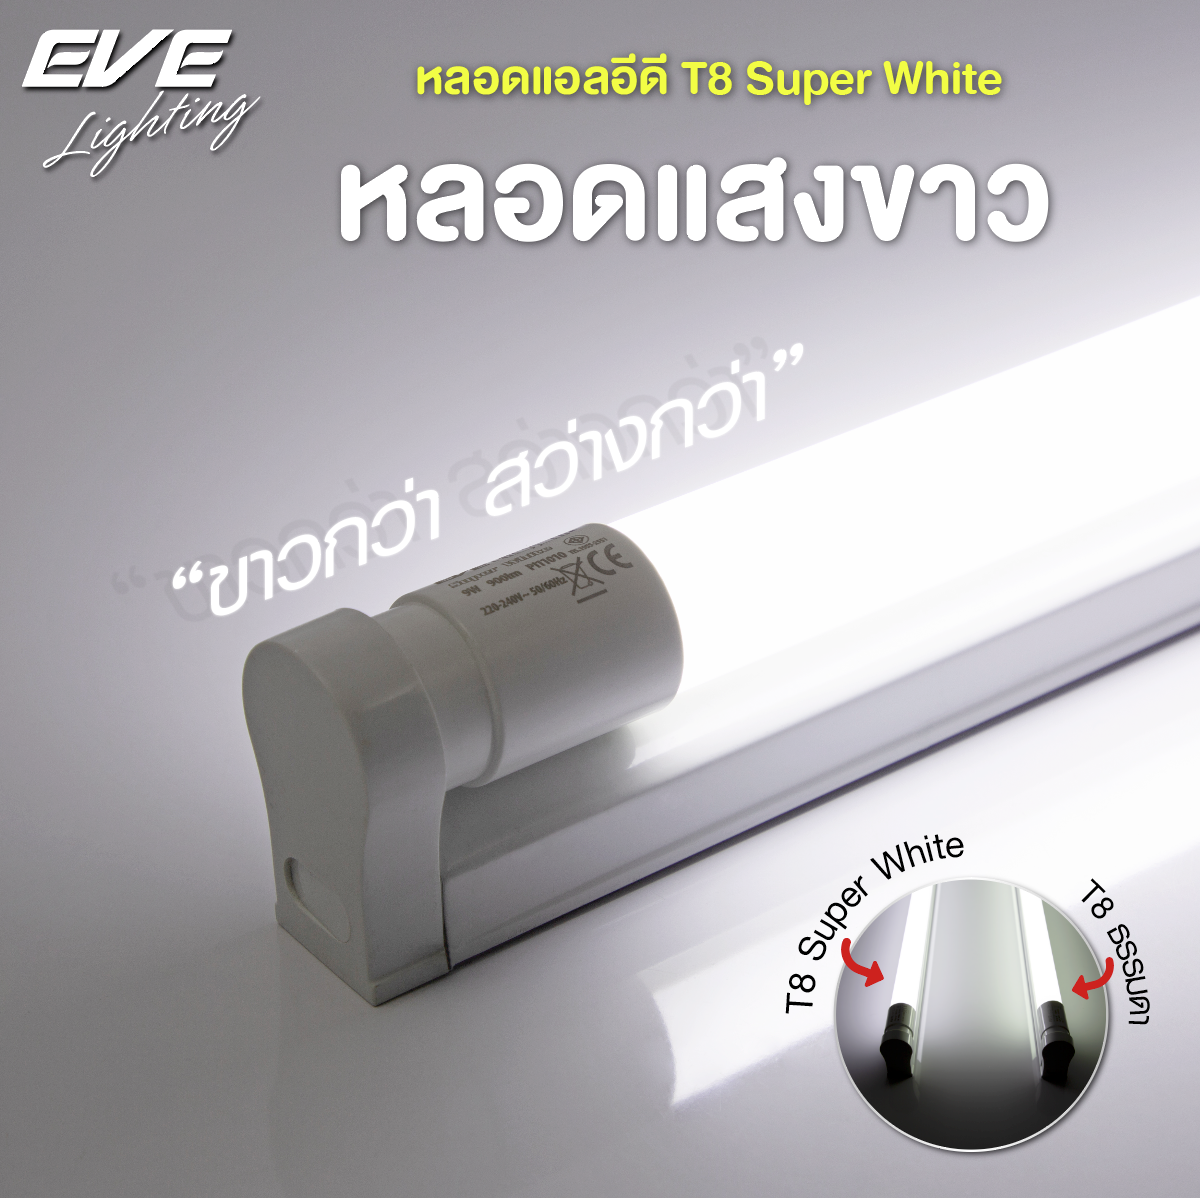 หลอดแอลอีดี T8 ซุปเปอร์ไวท์ แสงขาวกว่าหลอดทั่วไป ชนิดไฟเข้าสองทาง ขนาด 9 วัตต์ และ 18 วัตต์ LED T8 Super White 